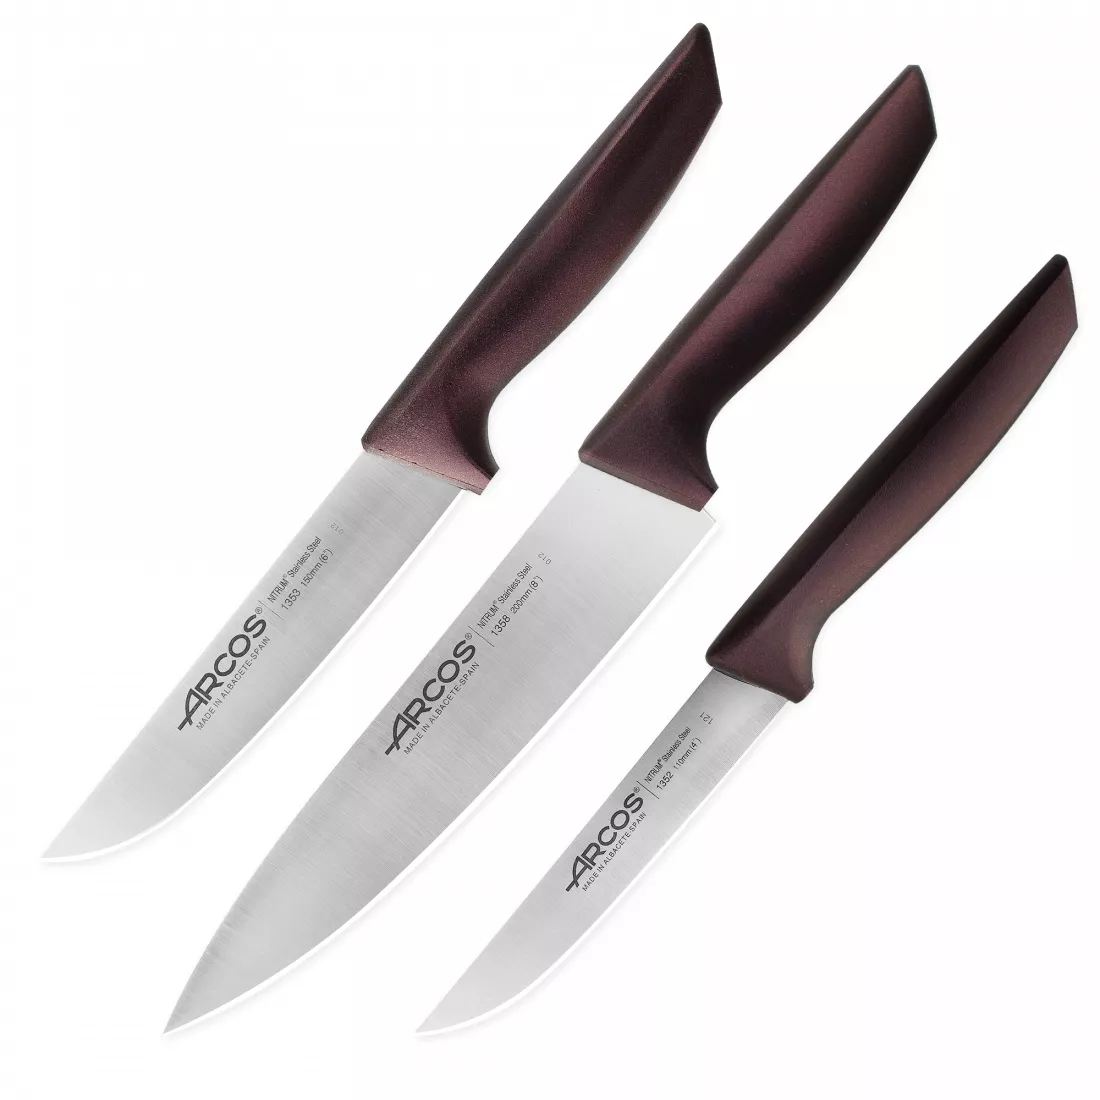 ARCOS Набор кухонных ножей в коробке, 3 шт. (110 мм, 150 мм, 200 мм,) бордовые ручки